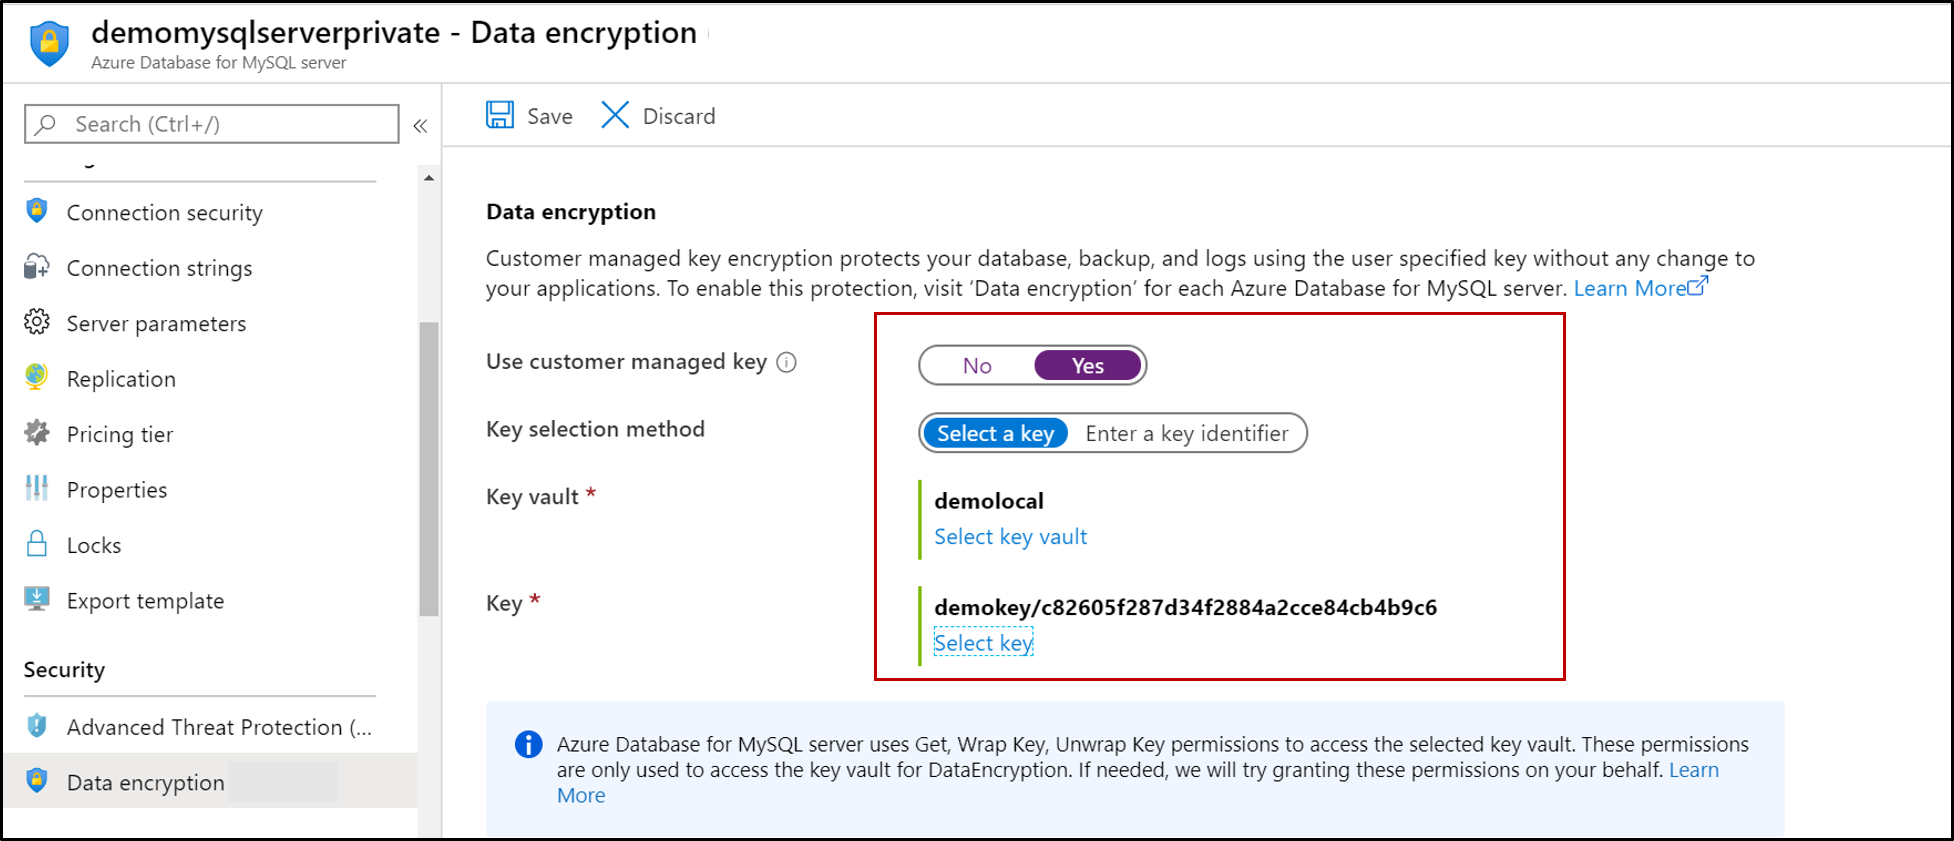 Снимок экрана с Базой данных Azure для MySQL, на котором выделены возможности шифрования данных